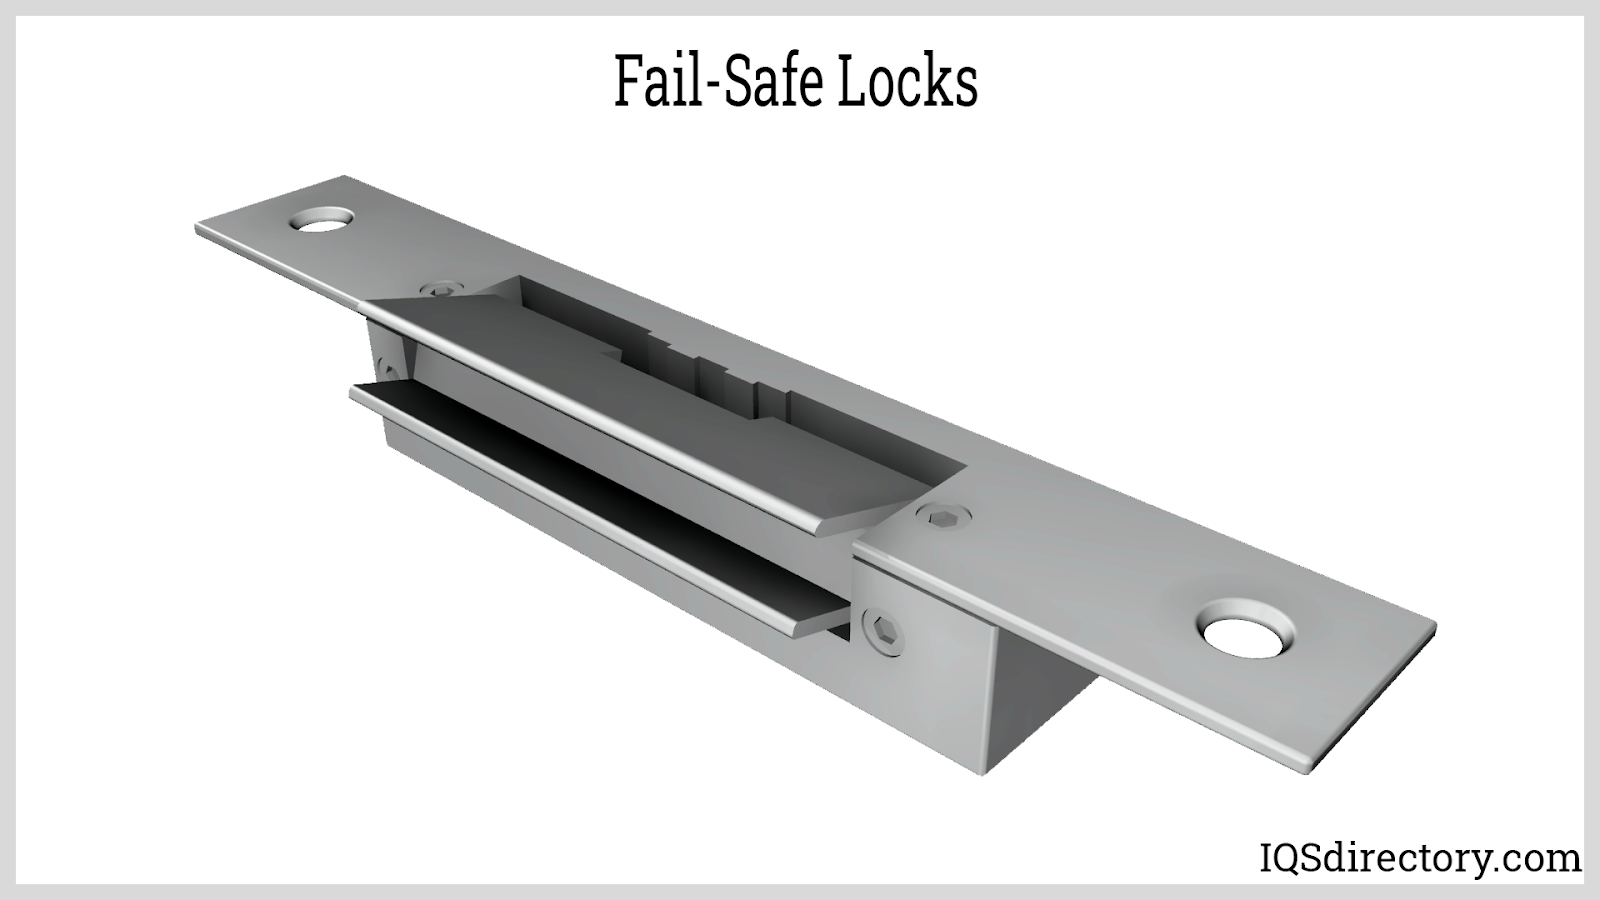 Fail-Safe Locks